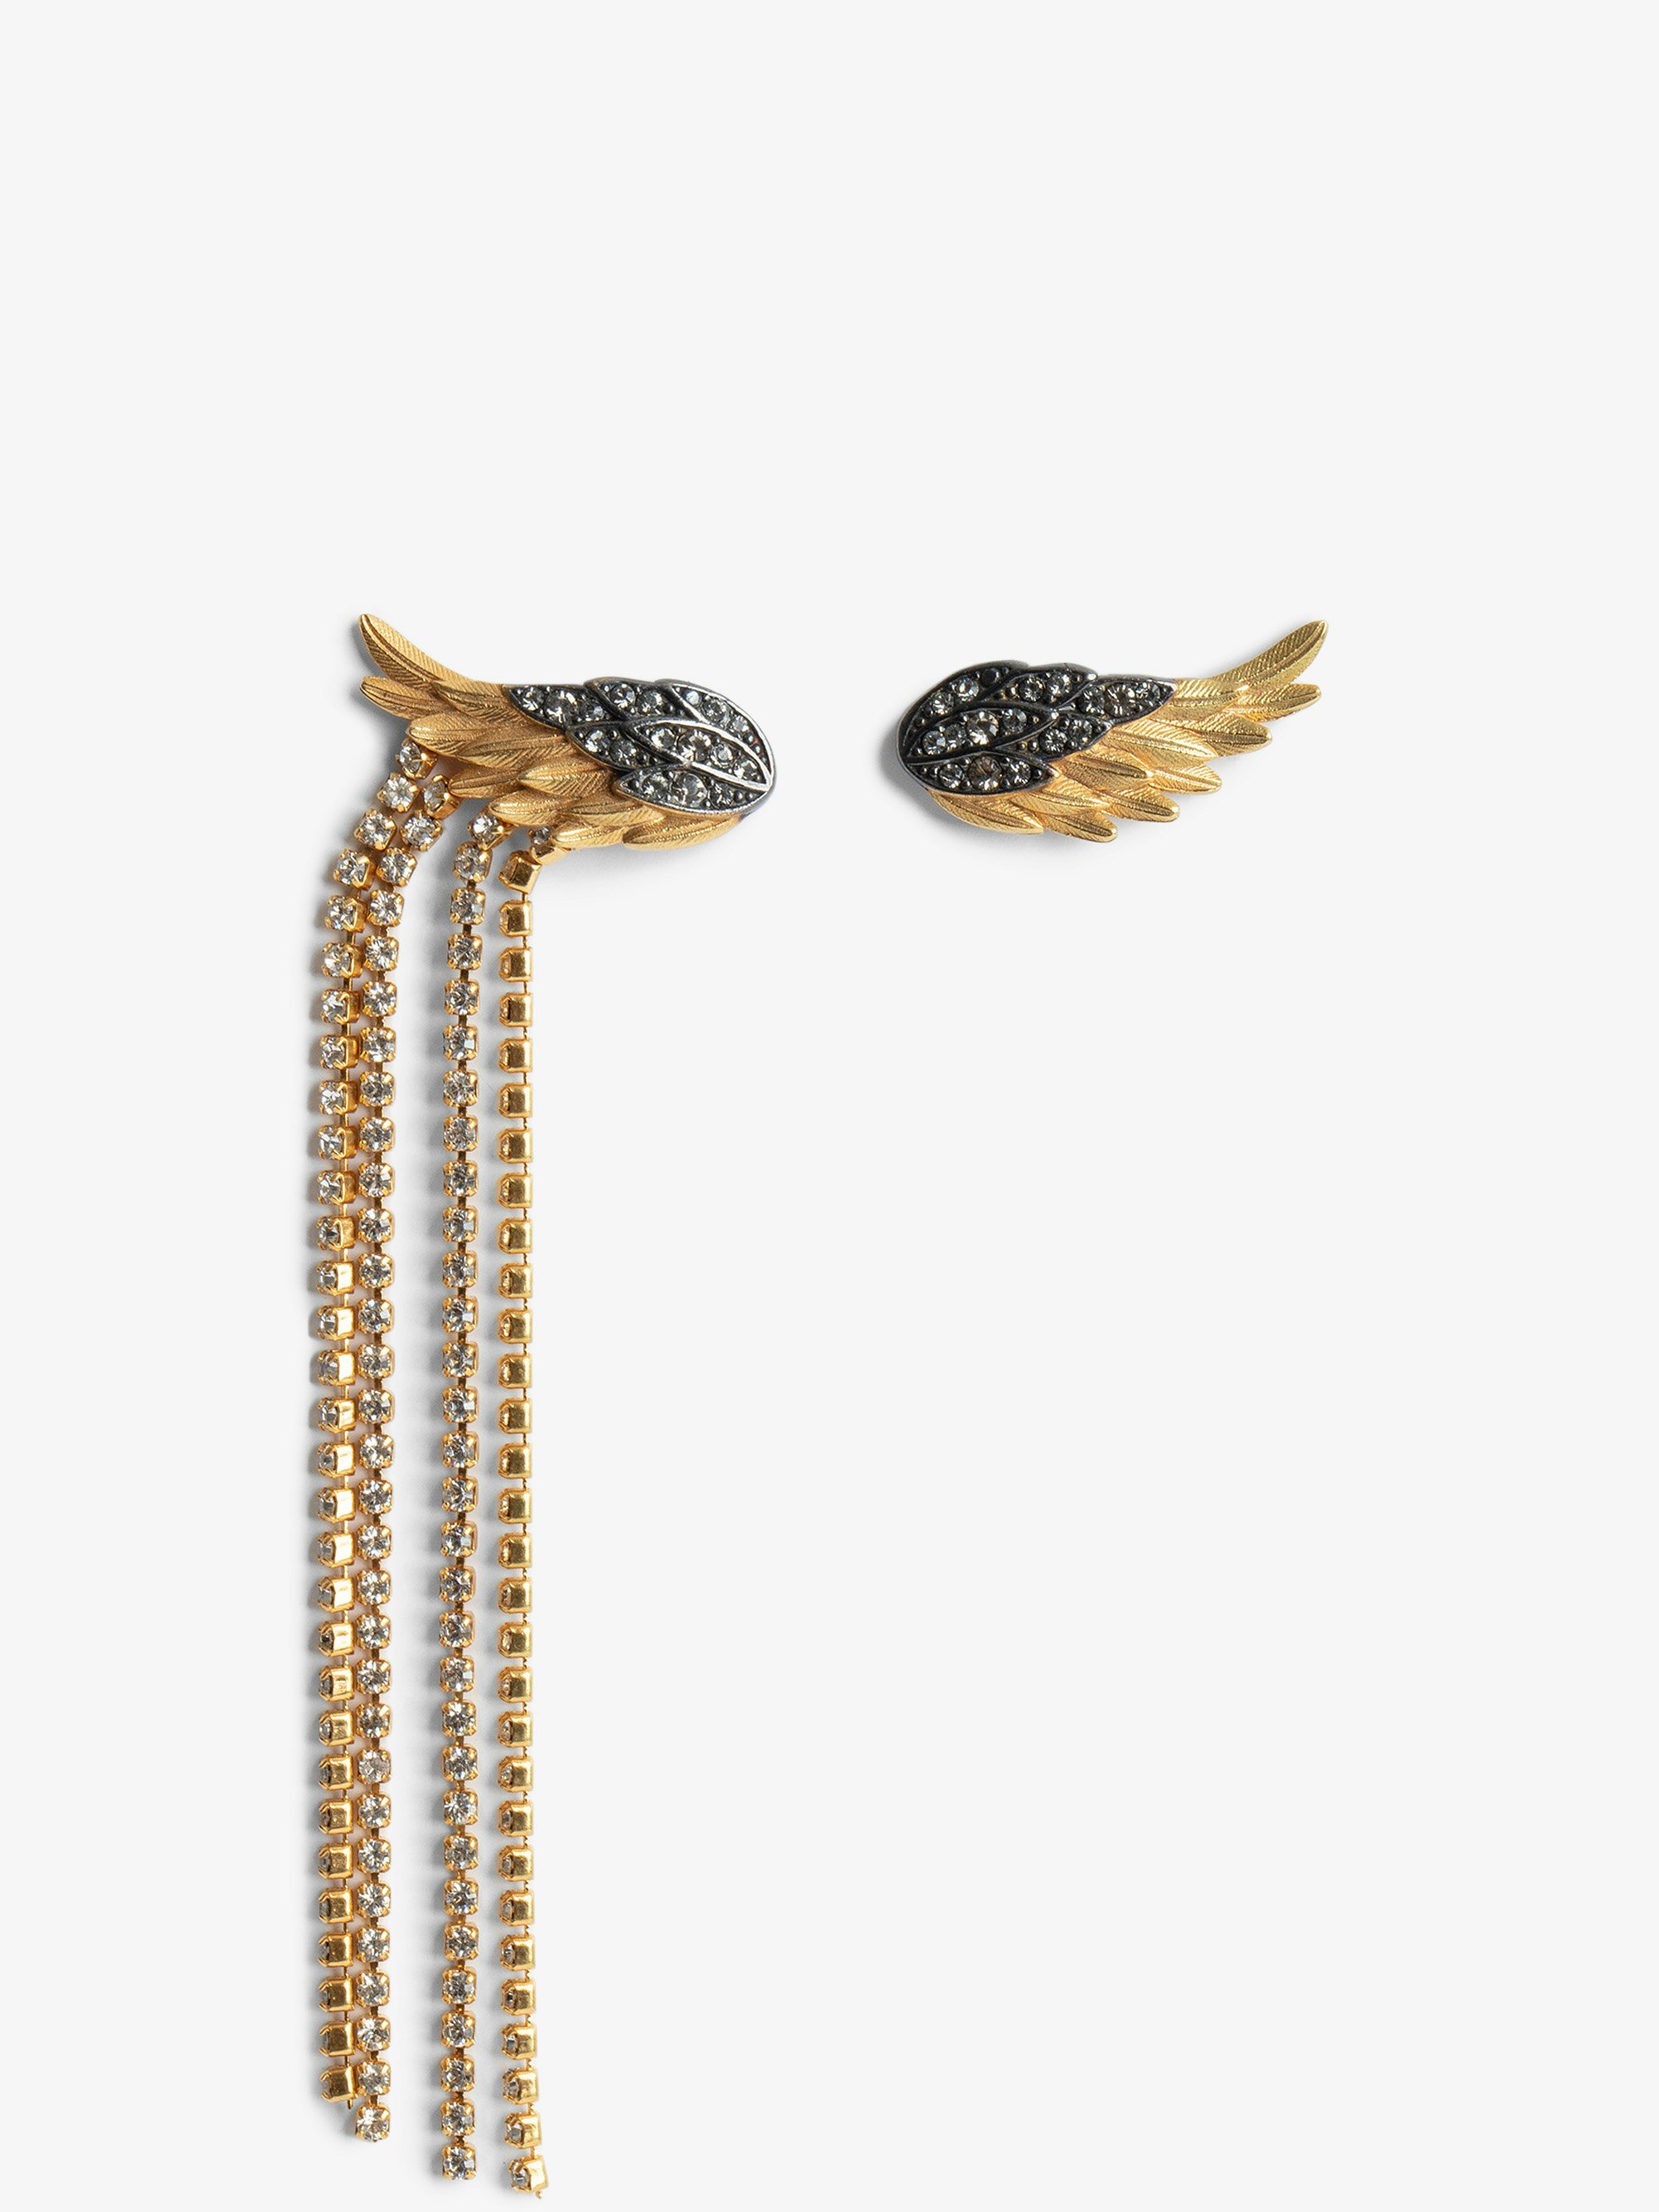 Pendientes Rock Feather - Pendientes con alas asimétricas de latón dorado y ennegrecido con cristales engastados blancos.